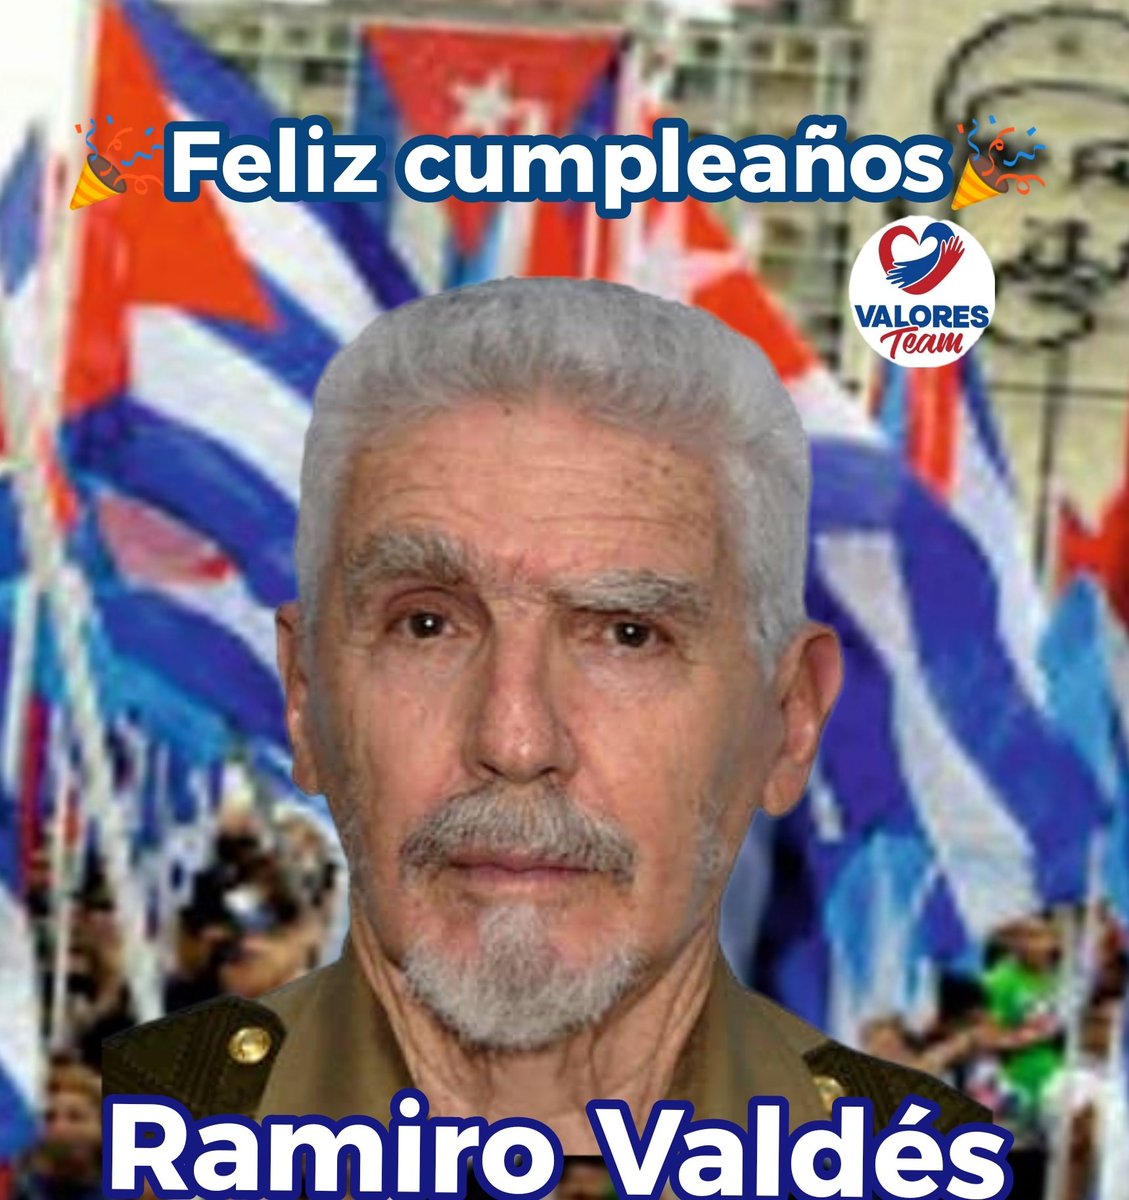 🗣 Este #DomingoEnFamilia 👨‍👩‍👧‍👧 felicitamos al Comandante Ramiro Valdés.
✨Lo distingue su valentía y su inquebrantable compromiso con la Revolución.
💪Su espíritu revolucionario inspira a 👩👨🇨🇺, su sabiduría y liderazgo continúa guiando a #Cuba 🇨🇺.
#ValoresTeam🕊️
@ValdesMenendez